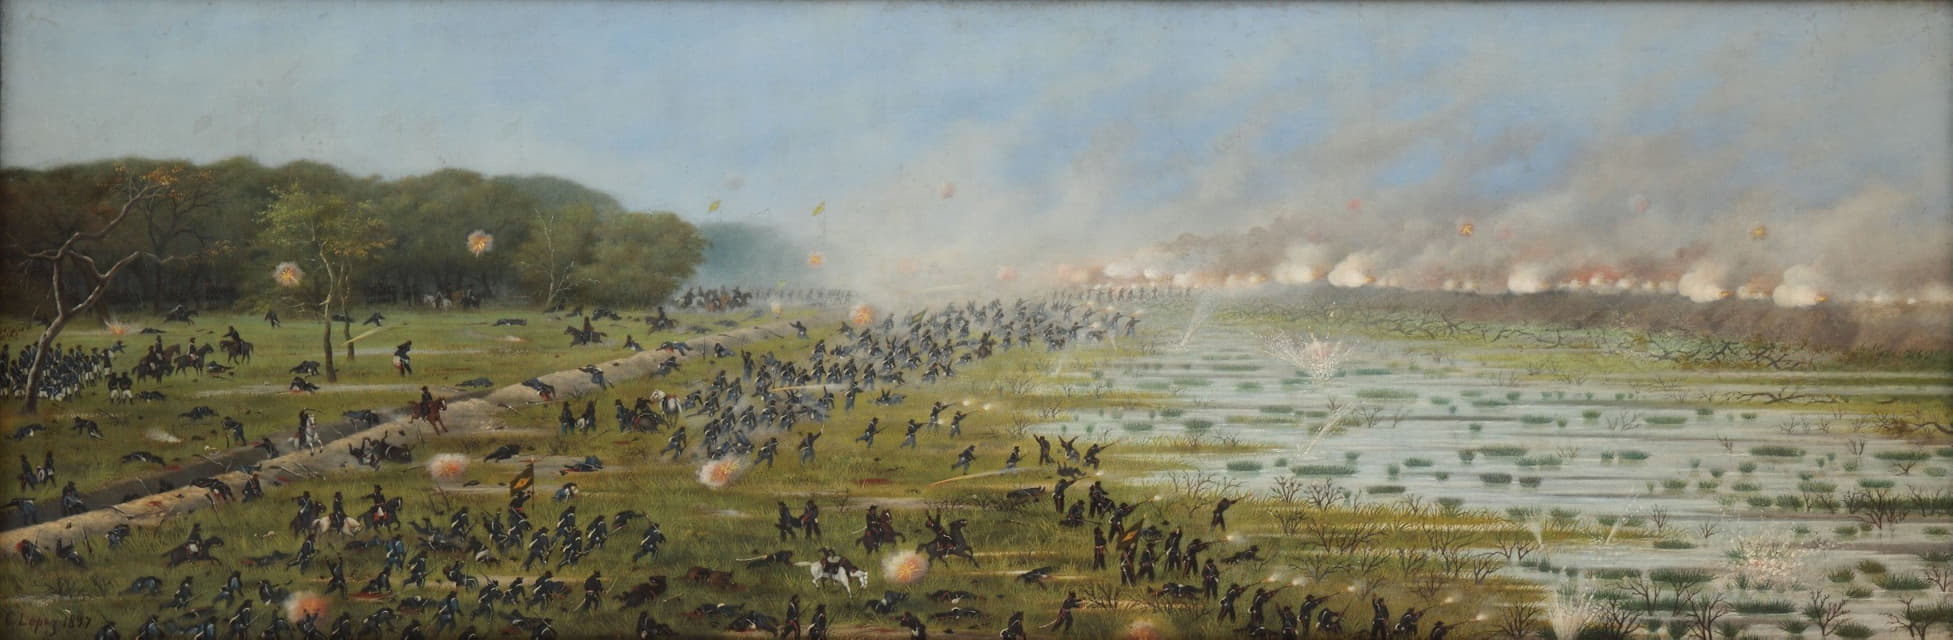 巴西第一纵队袭击库鲁帕蒂